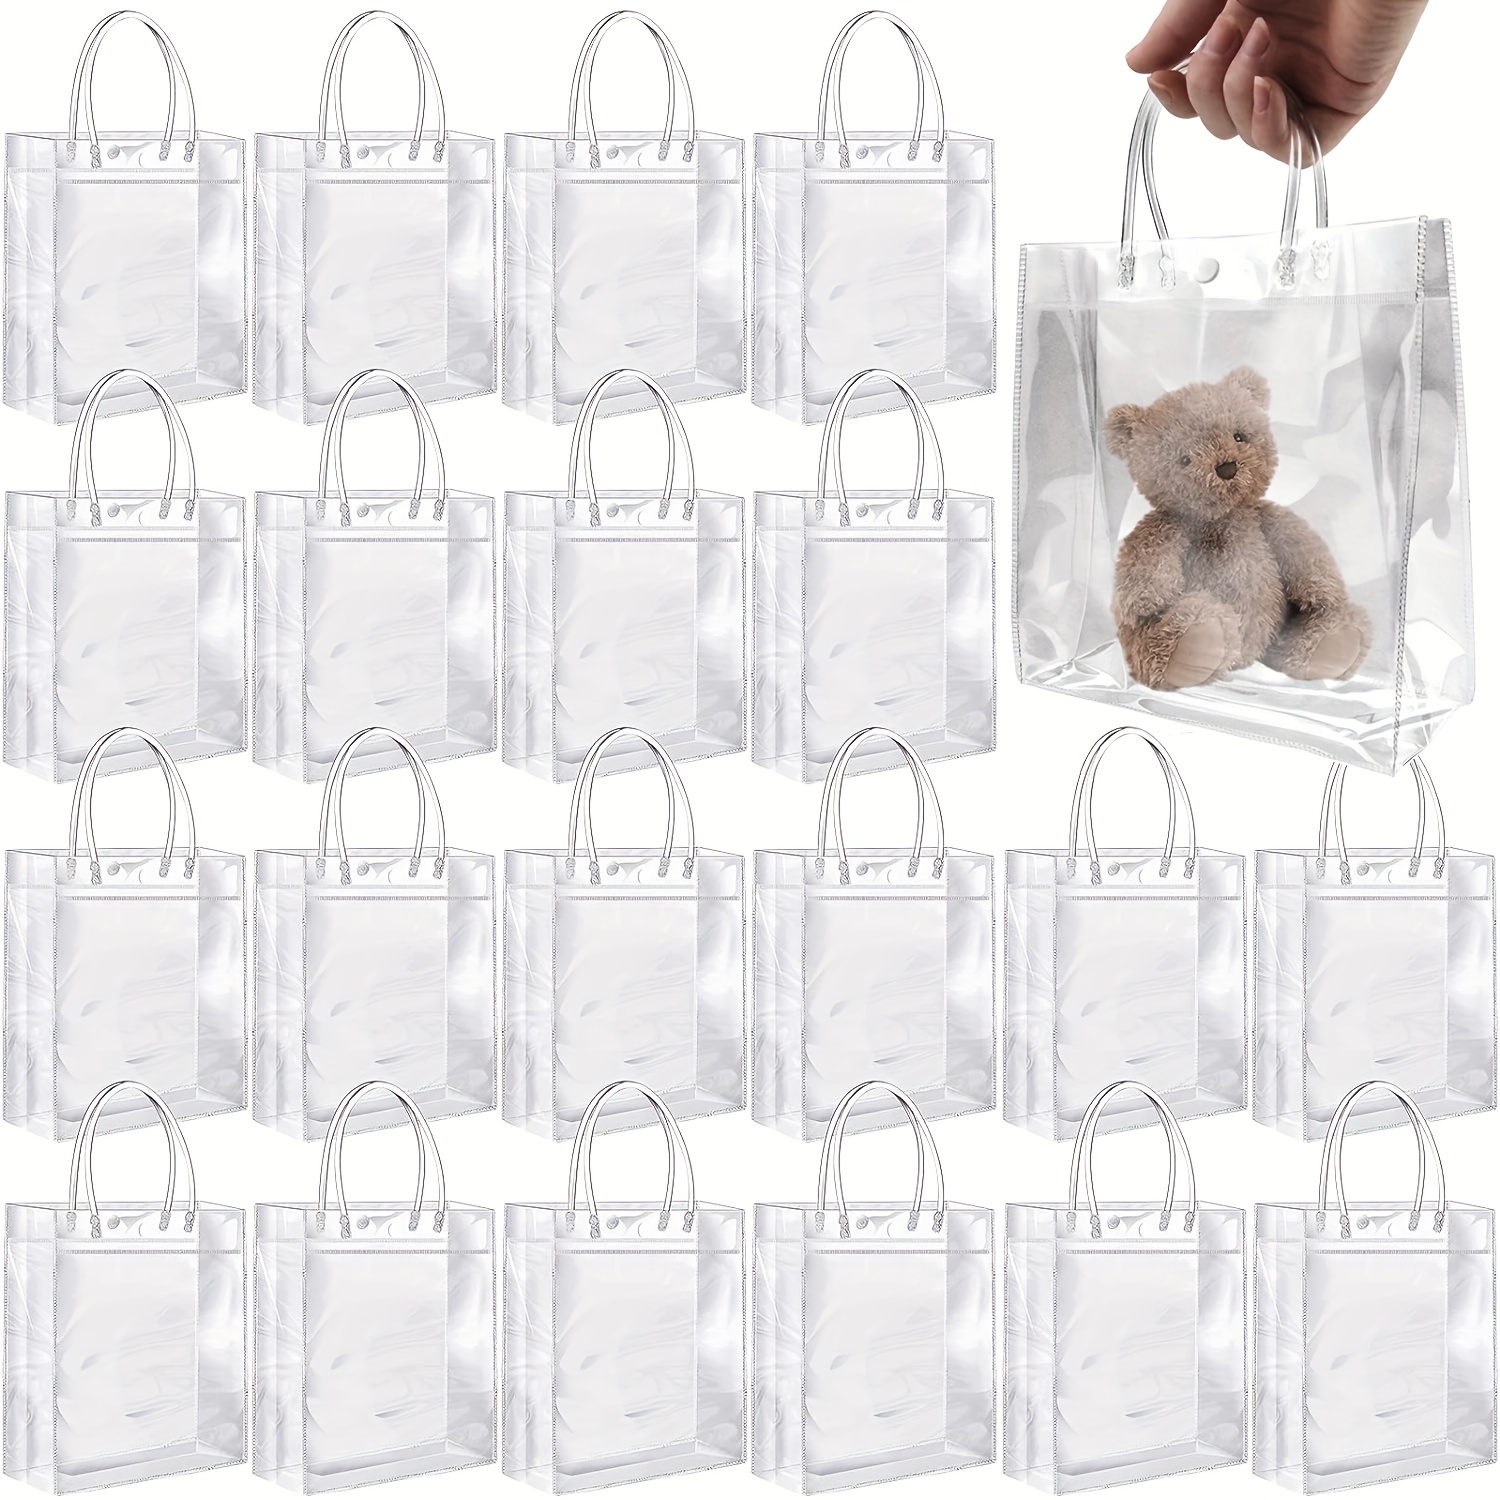 36 bolsas de regalo de plástico transparente con asa, reutilizables, de  plástico de PVC, bolsas transparentes para regalos, bolsas transparentes  para